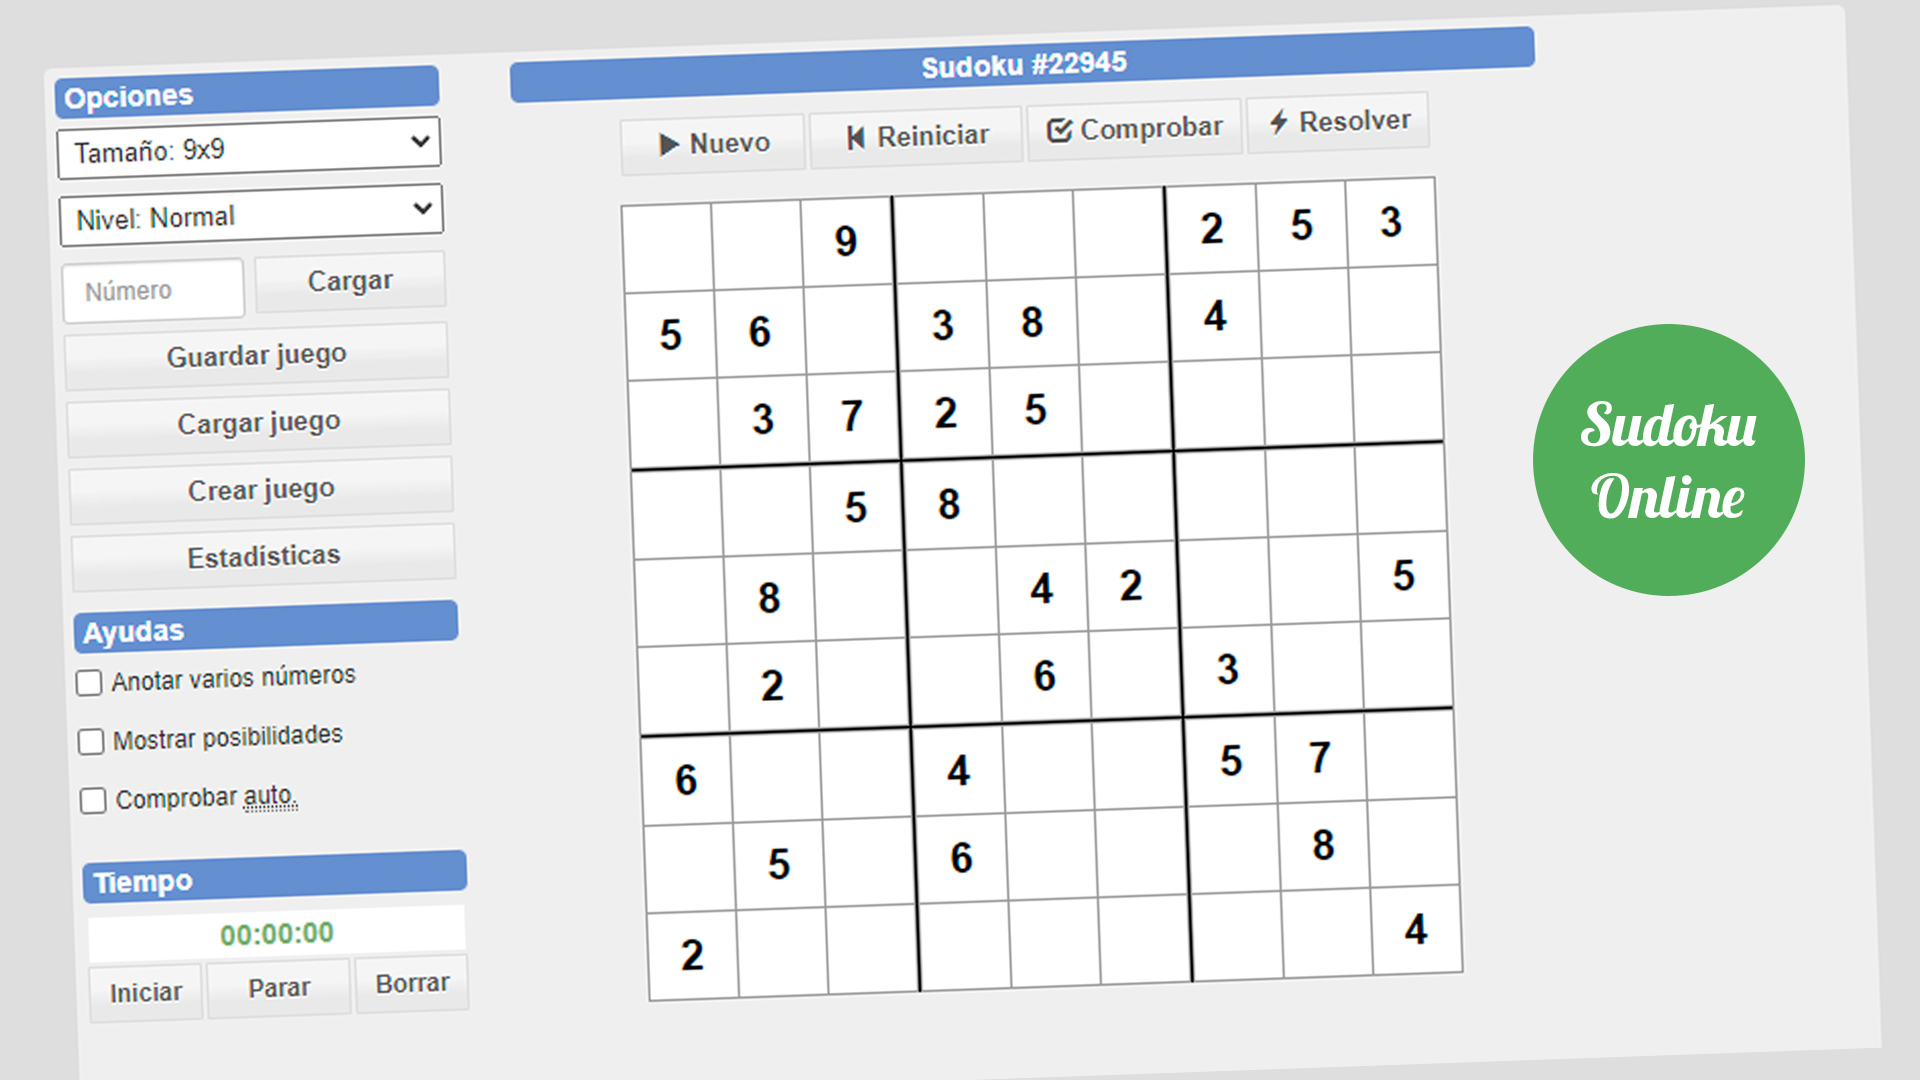 Hábil pista datos Cinco estrategias básicas para resolver un sudoku (Parte 1) - Revista Sudoku